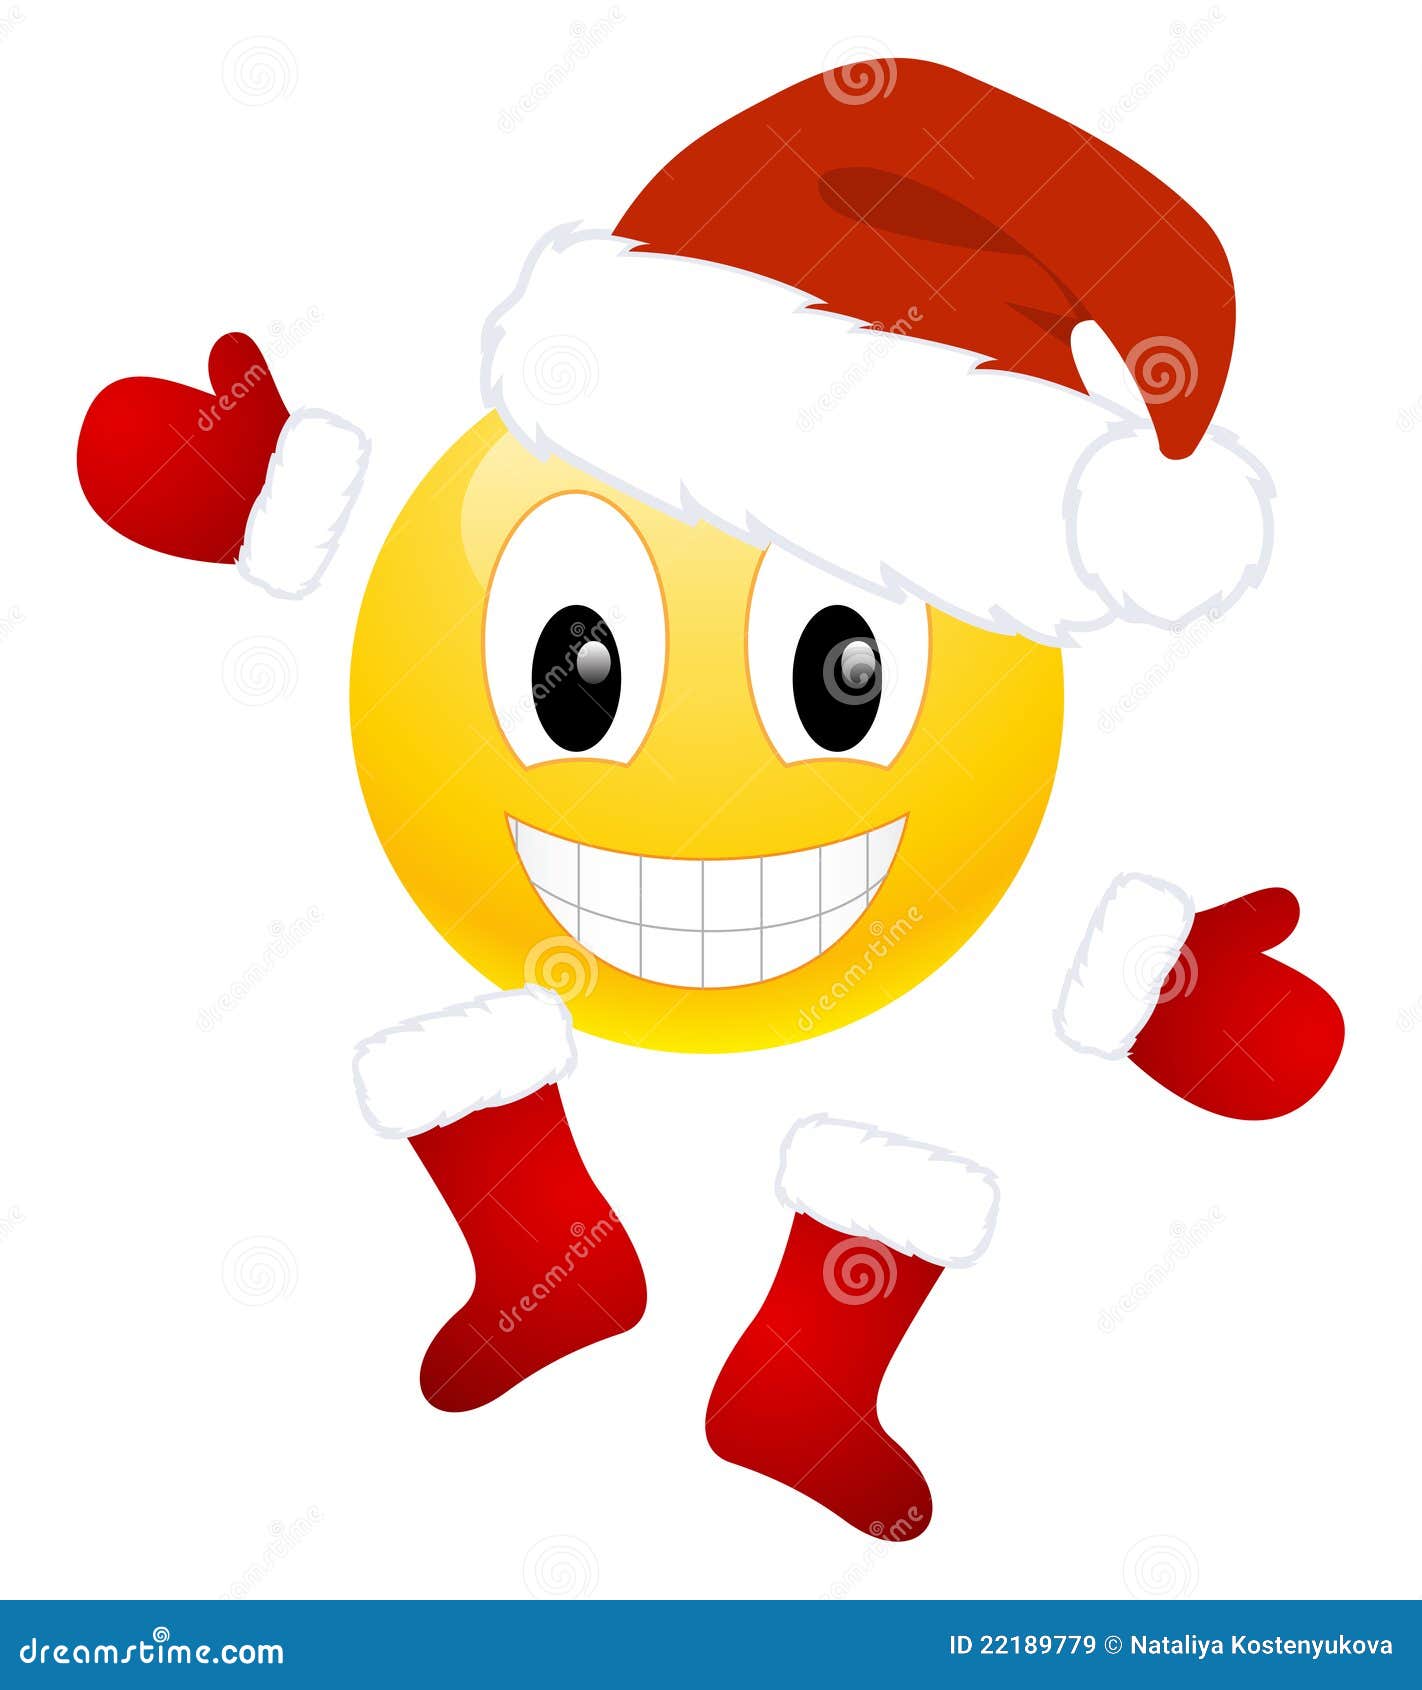 Emoticon Di Natale.Emoticon Di Natale Illustrazione Vettoriale Illustrazione Di Claus 22189779